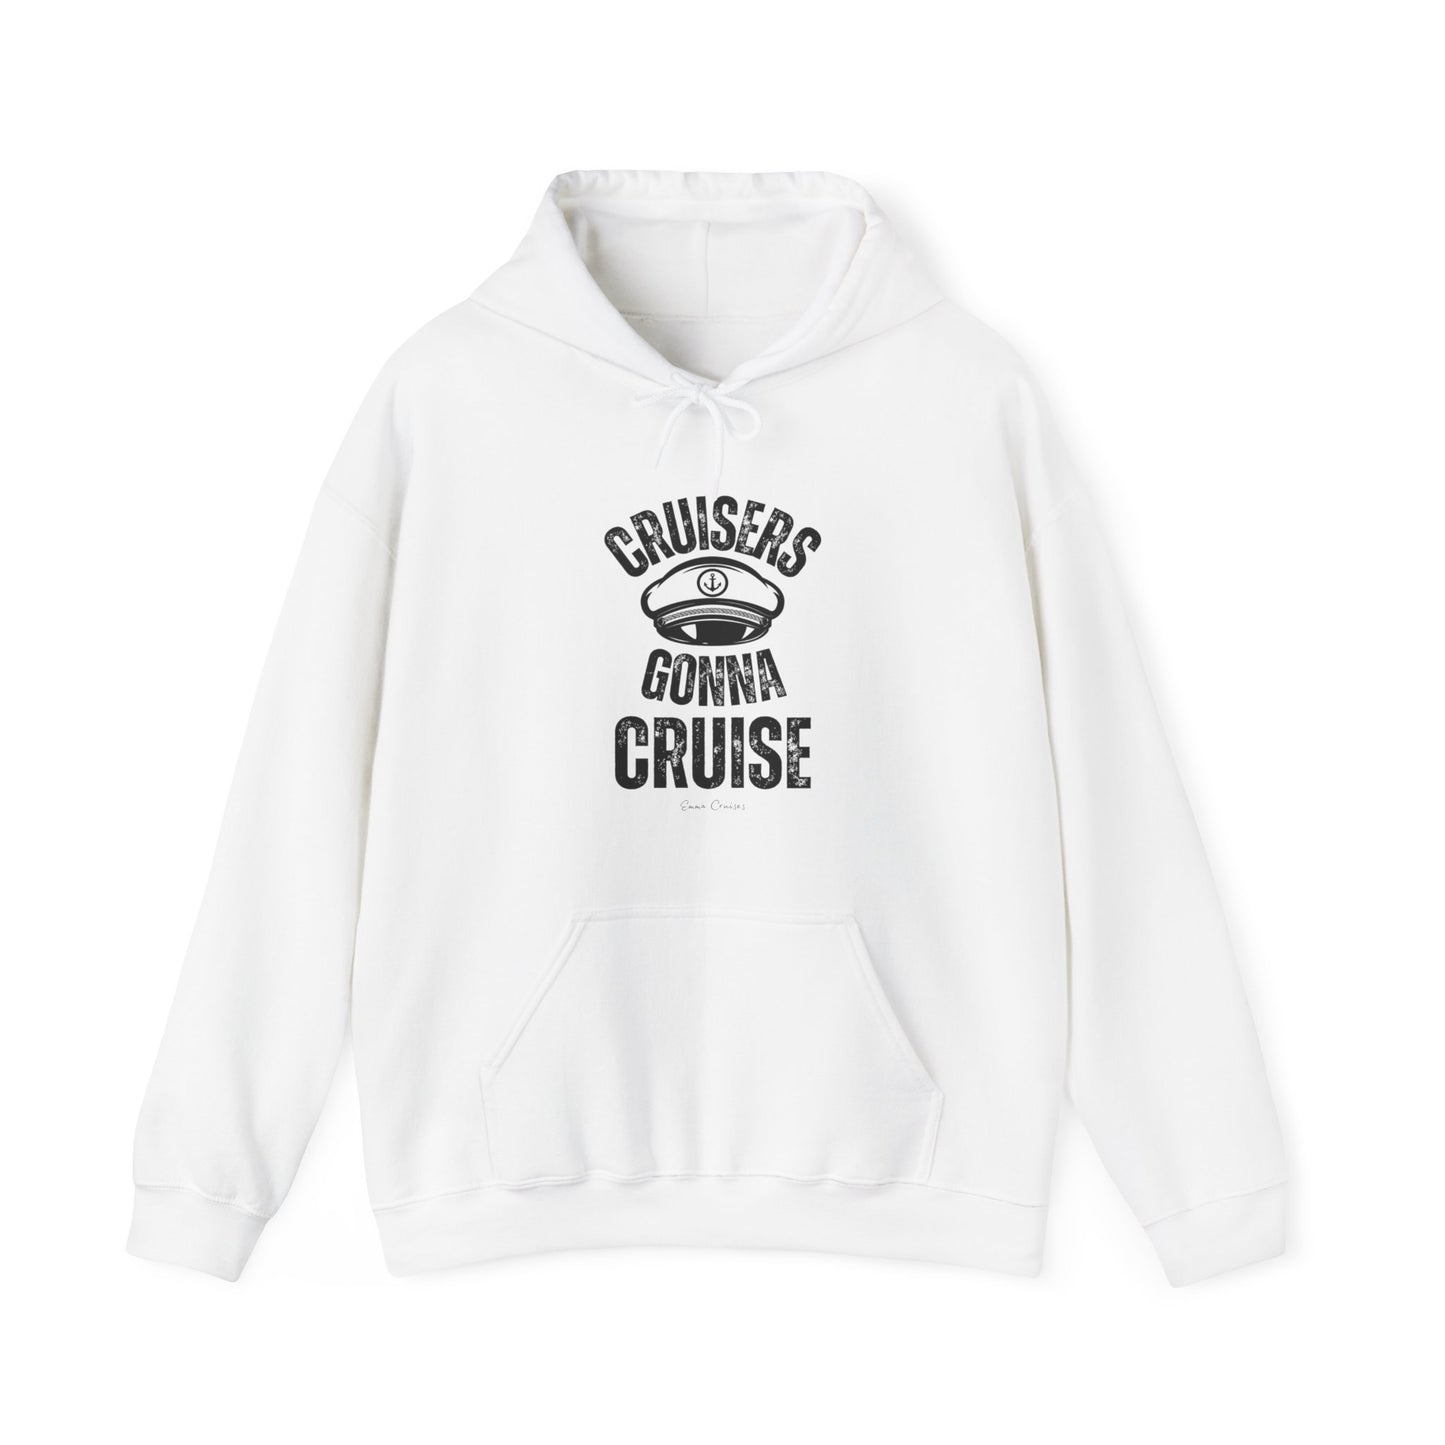 Cruisers Gonna Cruise - UNISEX Hoodie (UK)